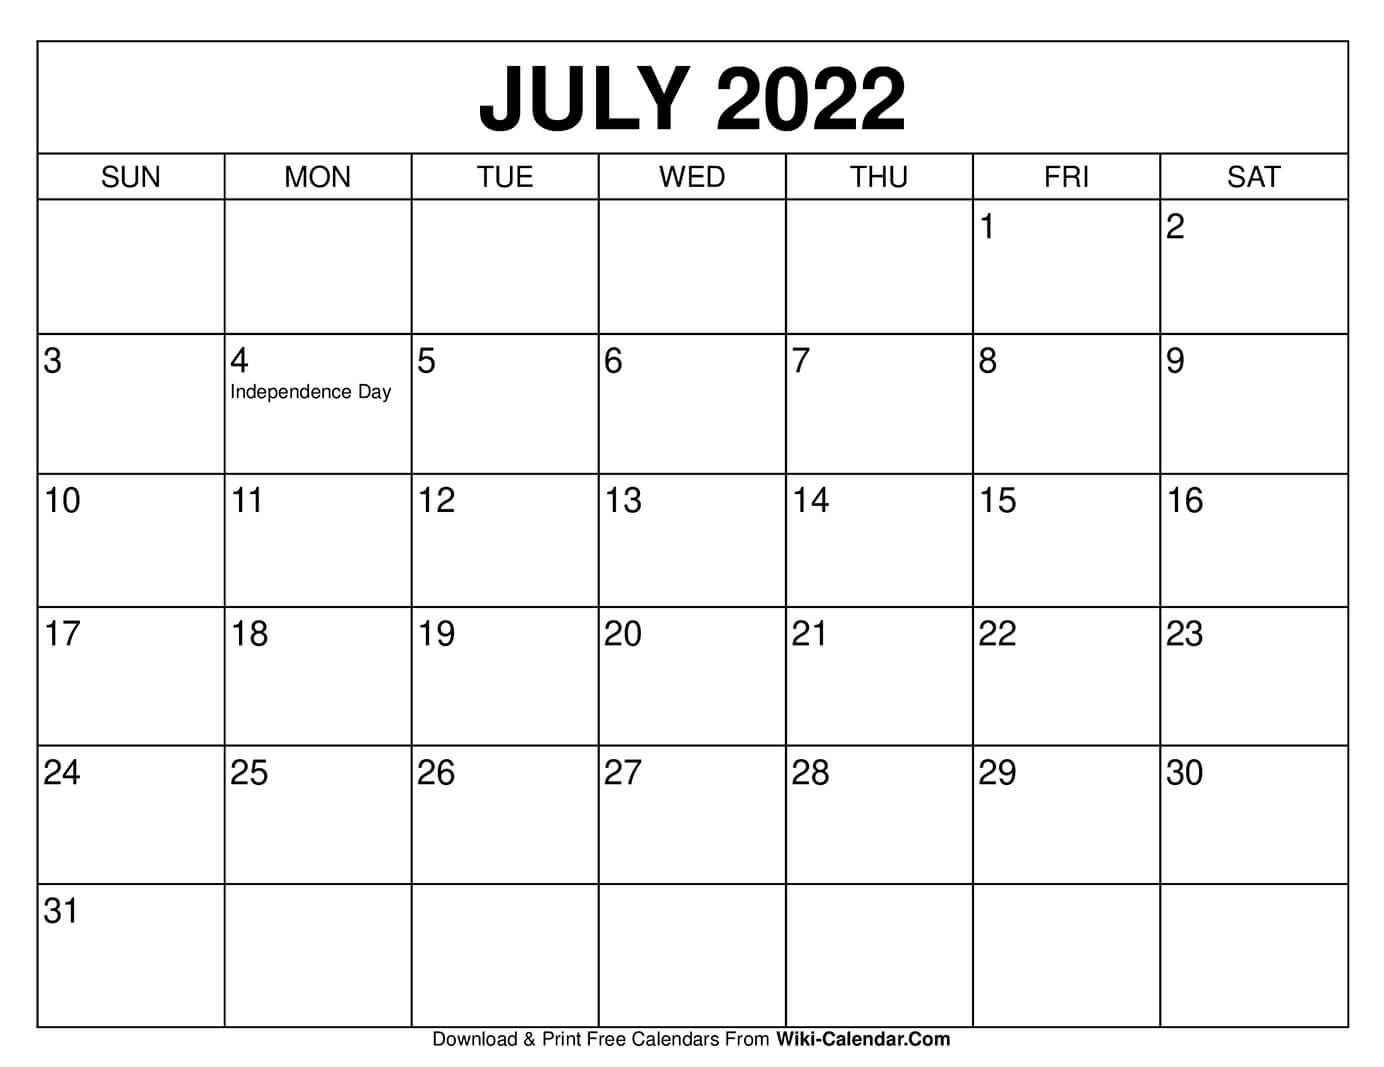 Calendar June 2021 - July 2022 - Twoteny